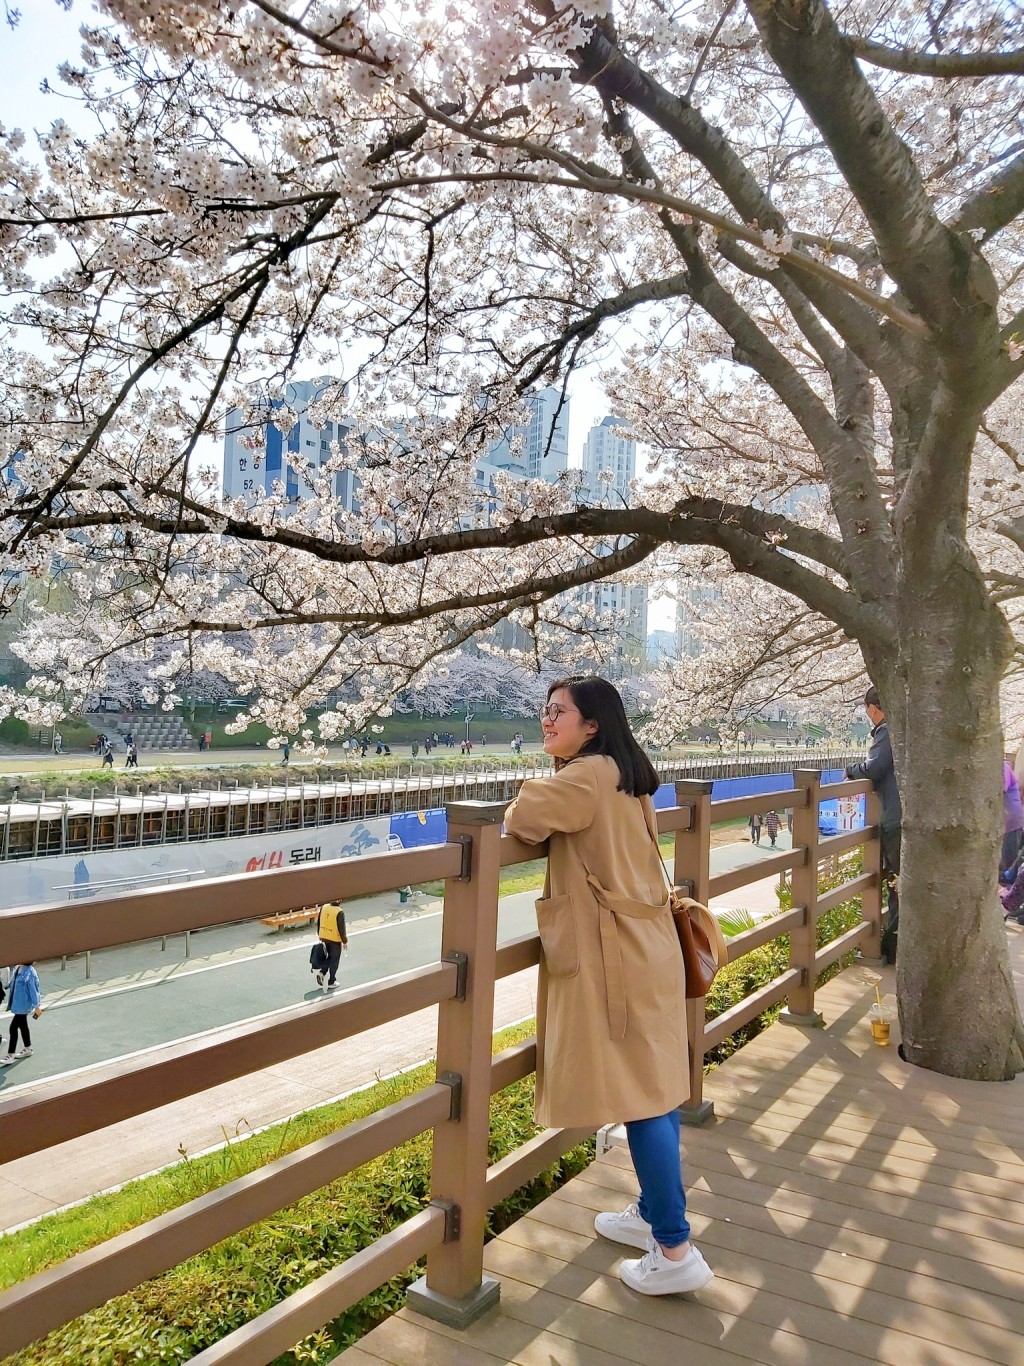 作者介绍釜山不少赏樱热点。